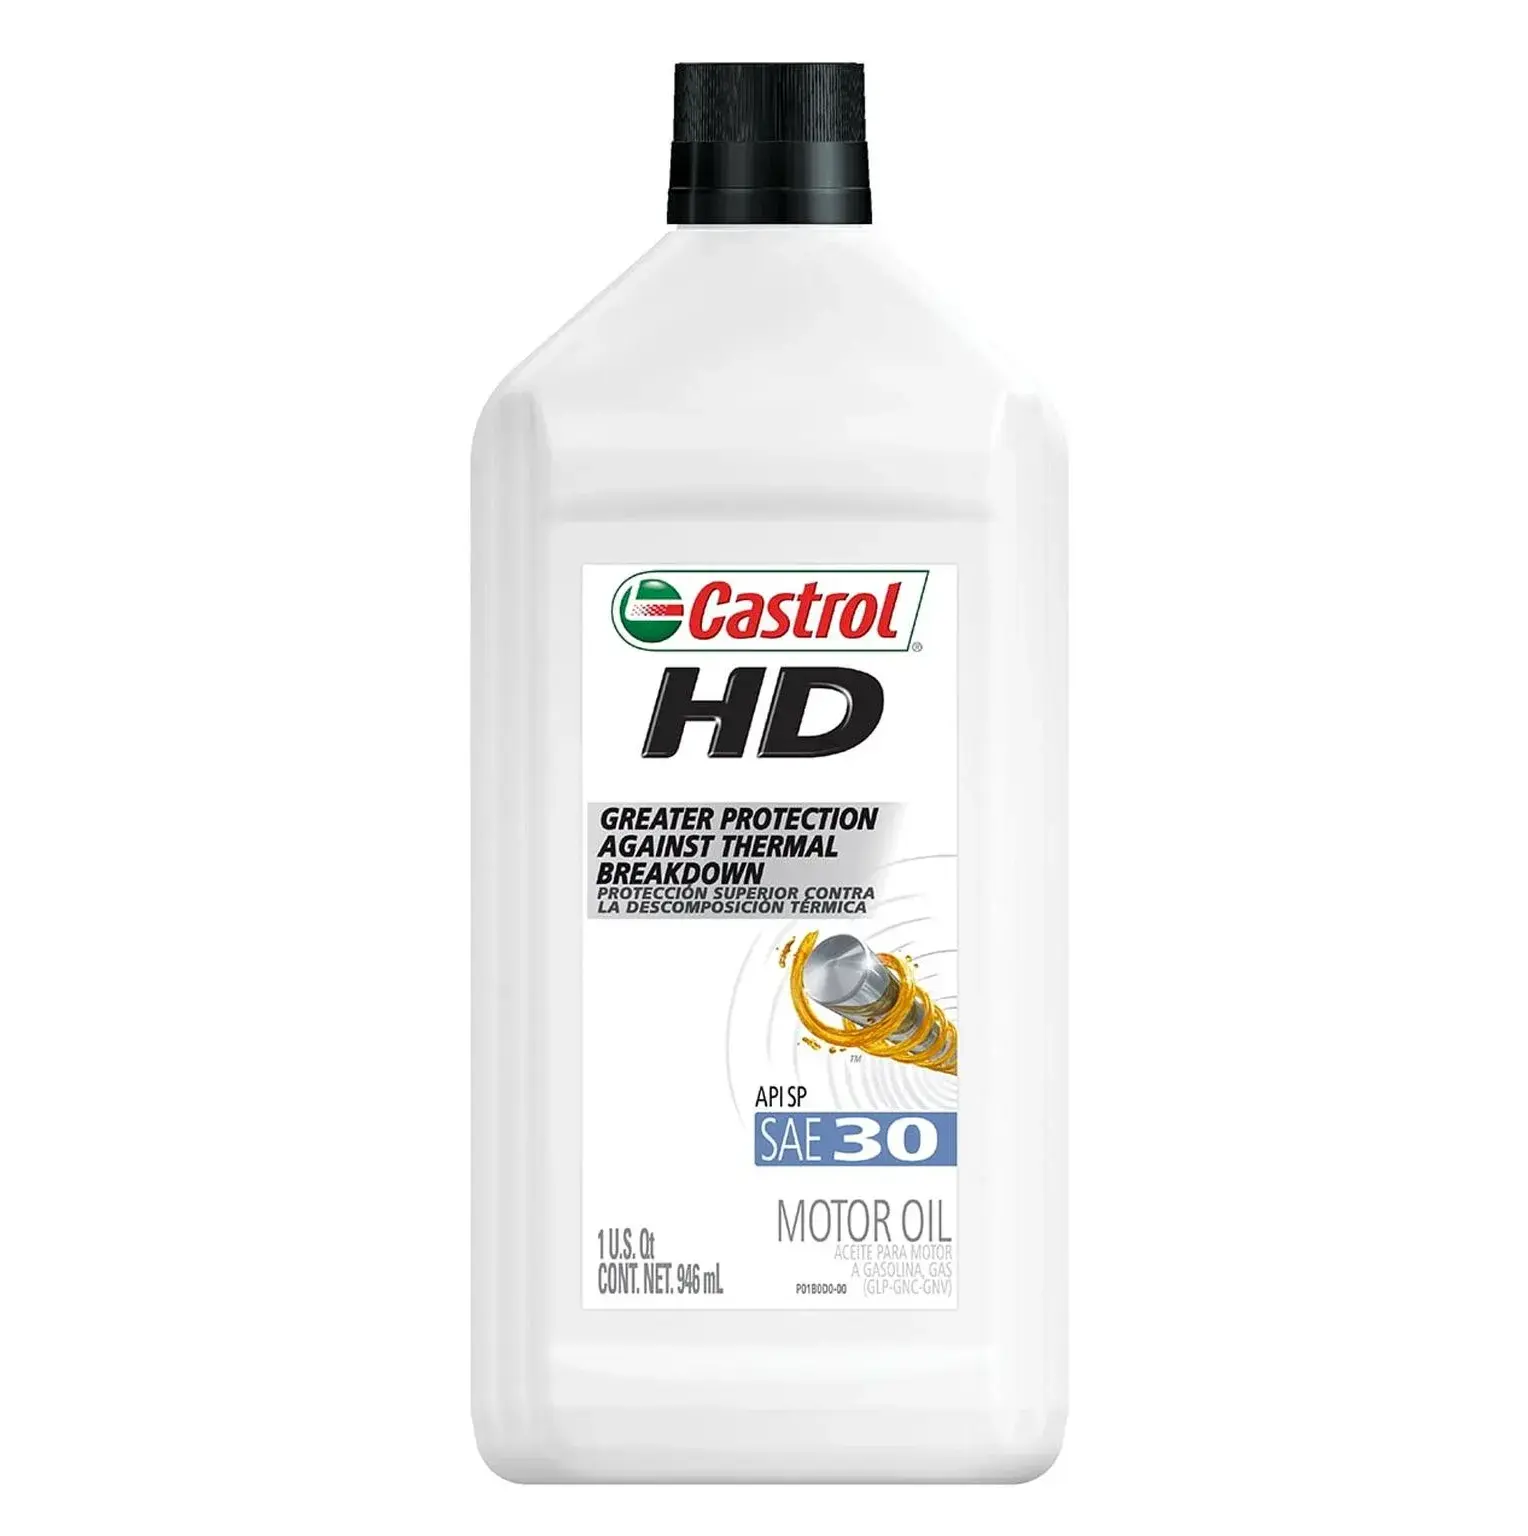 Castrol HD 30 monogrado l olio motore, 1 quarto